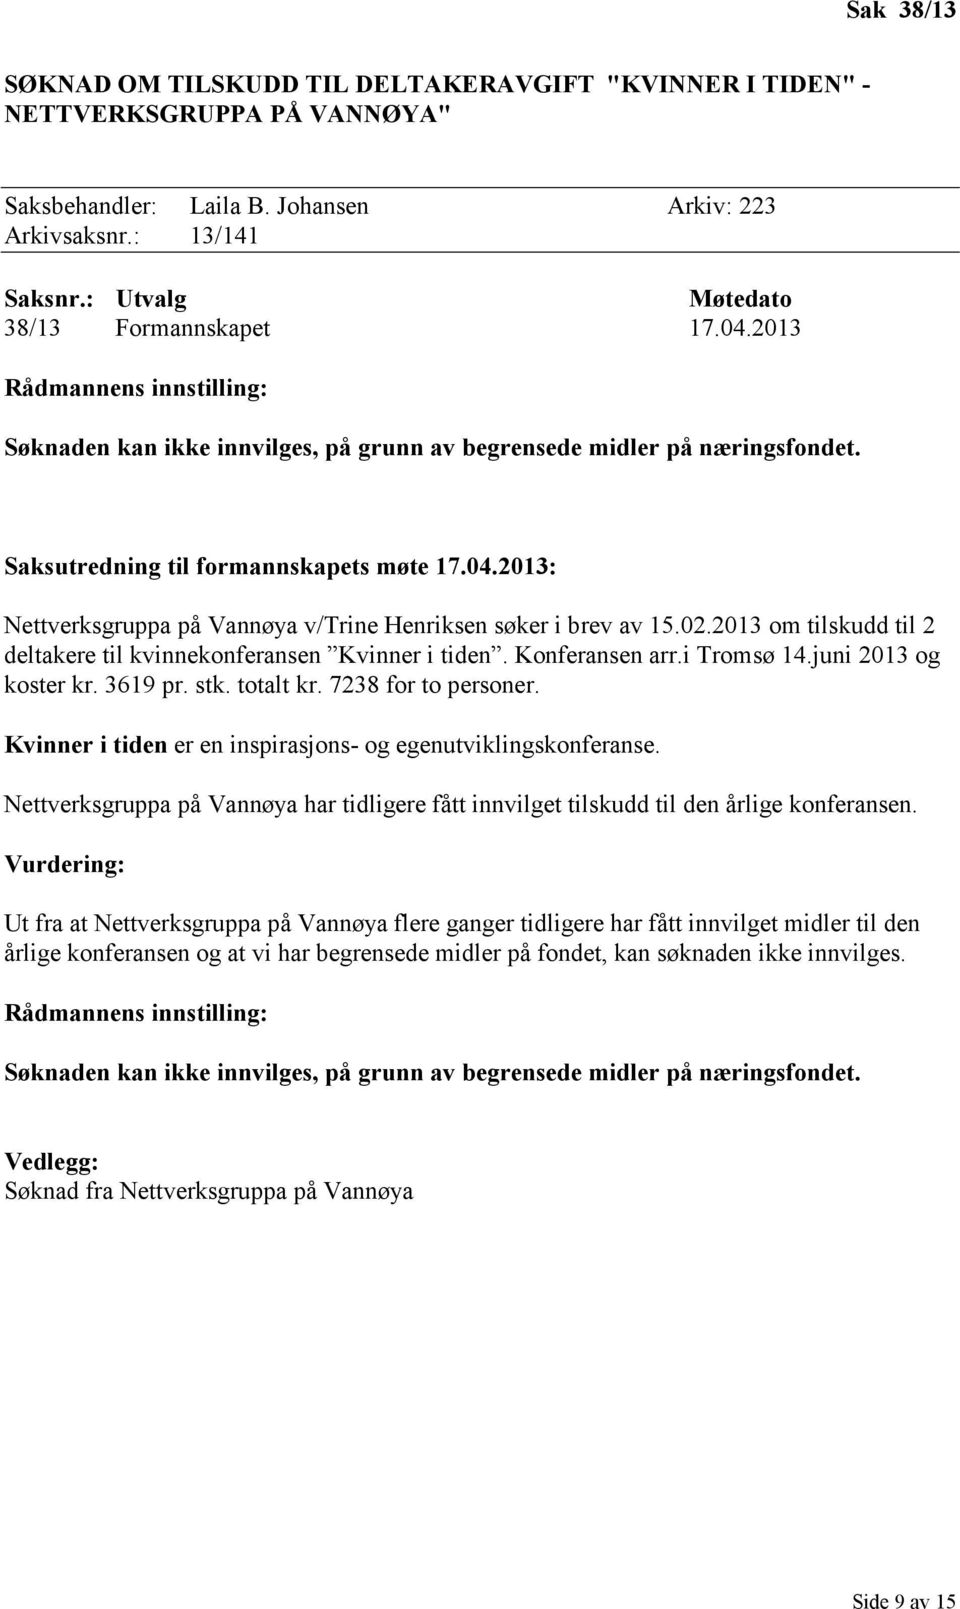 2013 om tilskudd til 2 deltakere til kvinnekonferansen Kvinner i tiden. Konferansen arr.i Tromsø 14.juni 2013 og koster kr. 3619 pr. stk. totalt kr. 7238 for to personer.